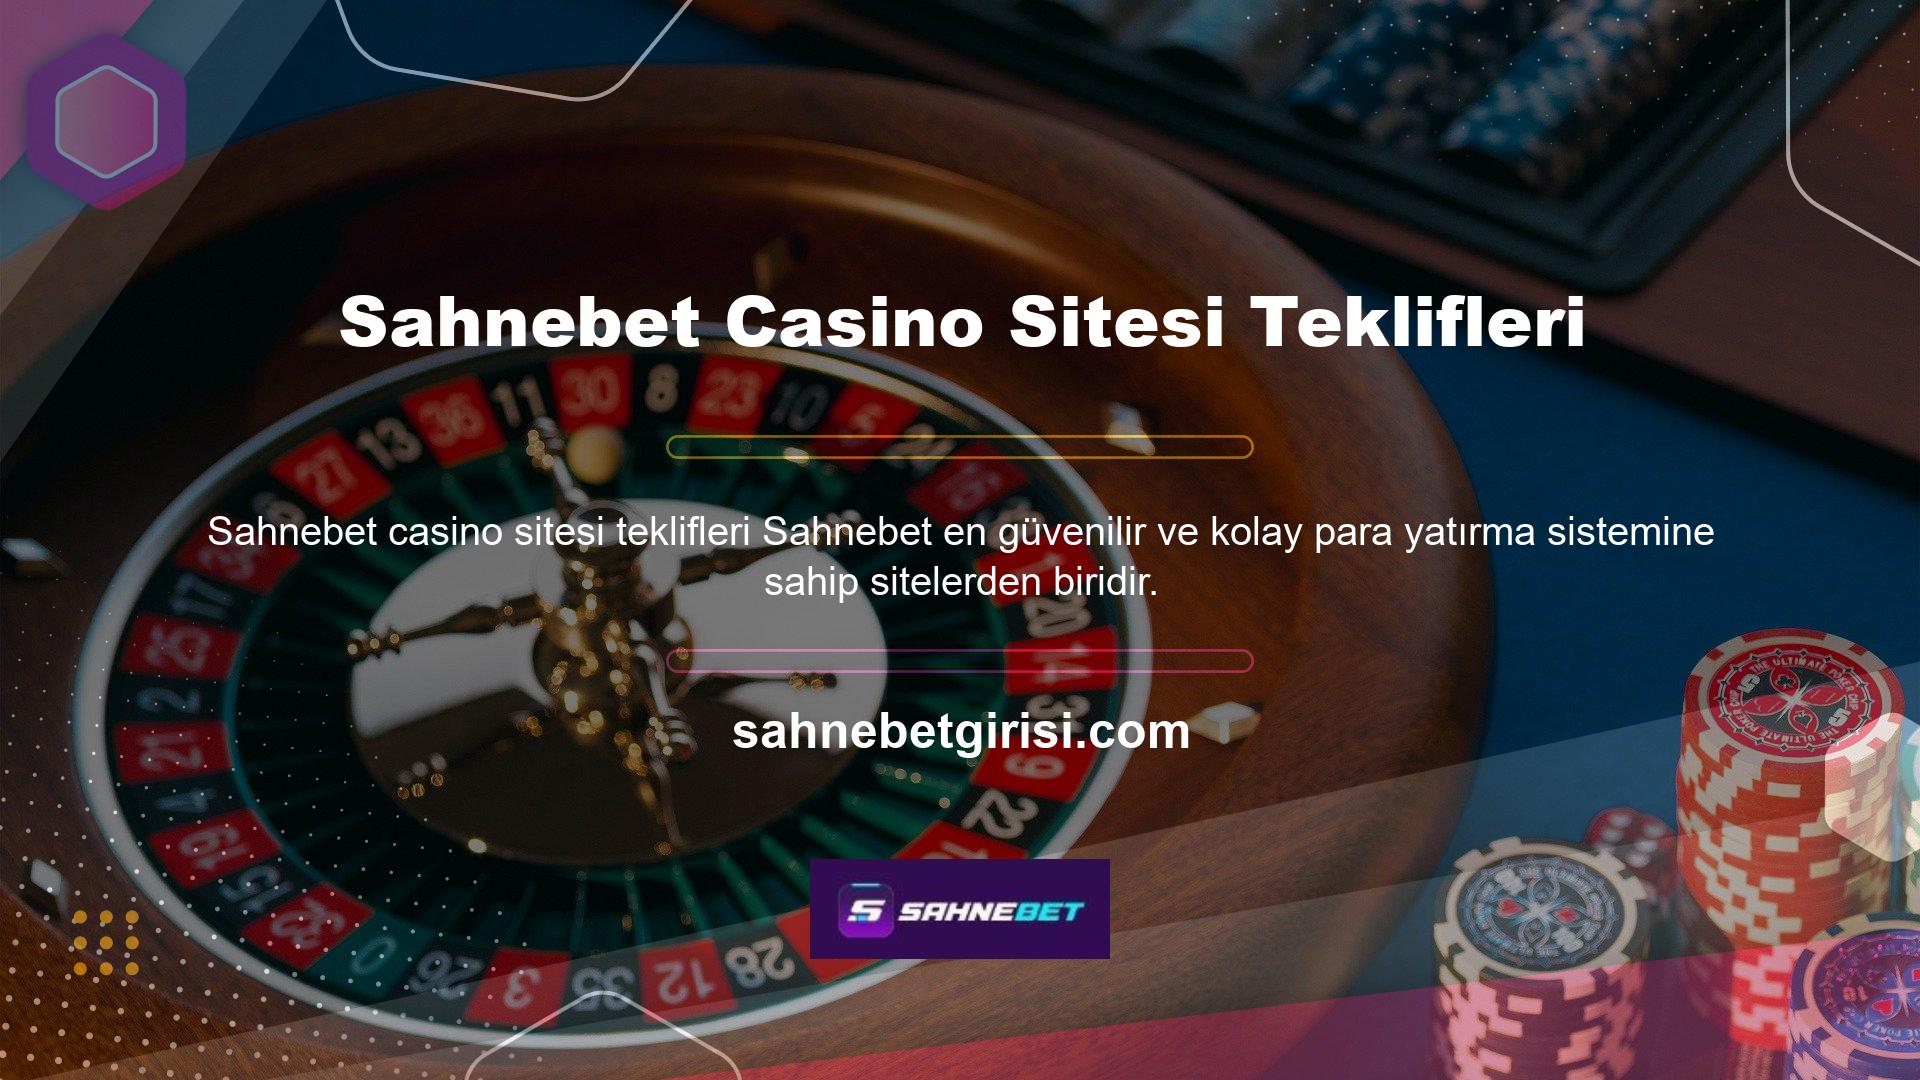 Para yatırma sistemi kurarak casino sitesinin tekliflerine katılabilir ve oyun dünyasında para kazanabilirsiniz